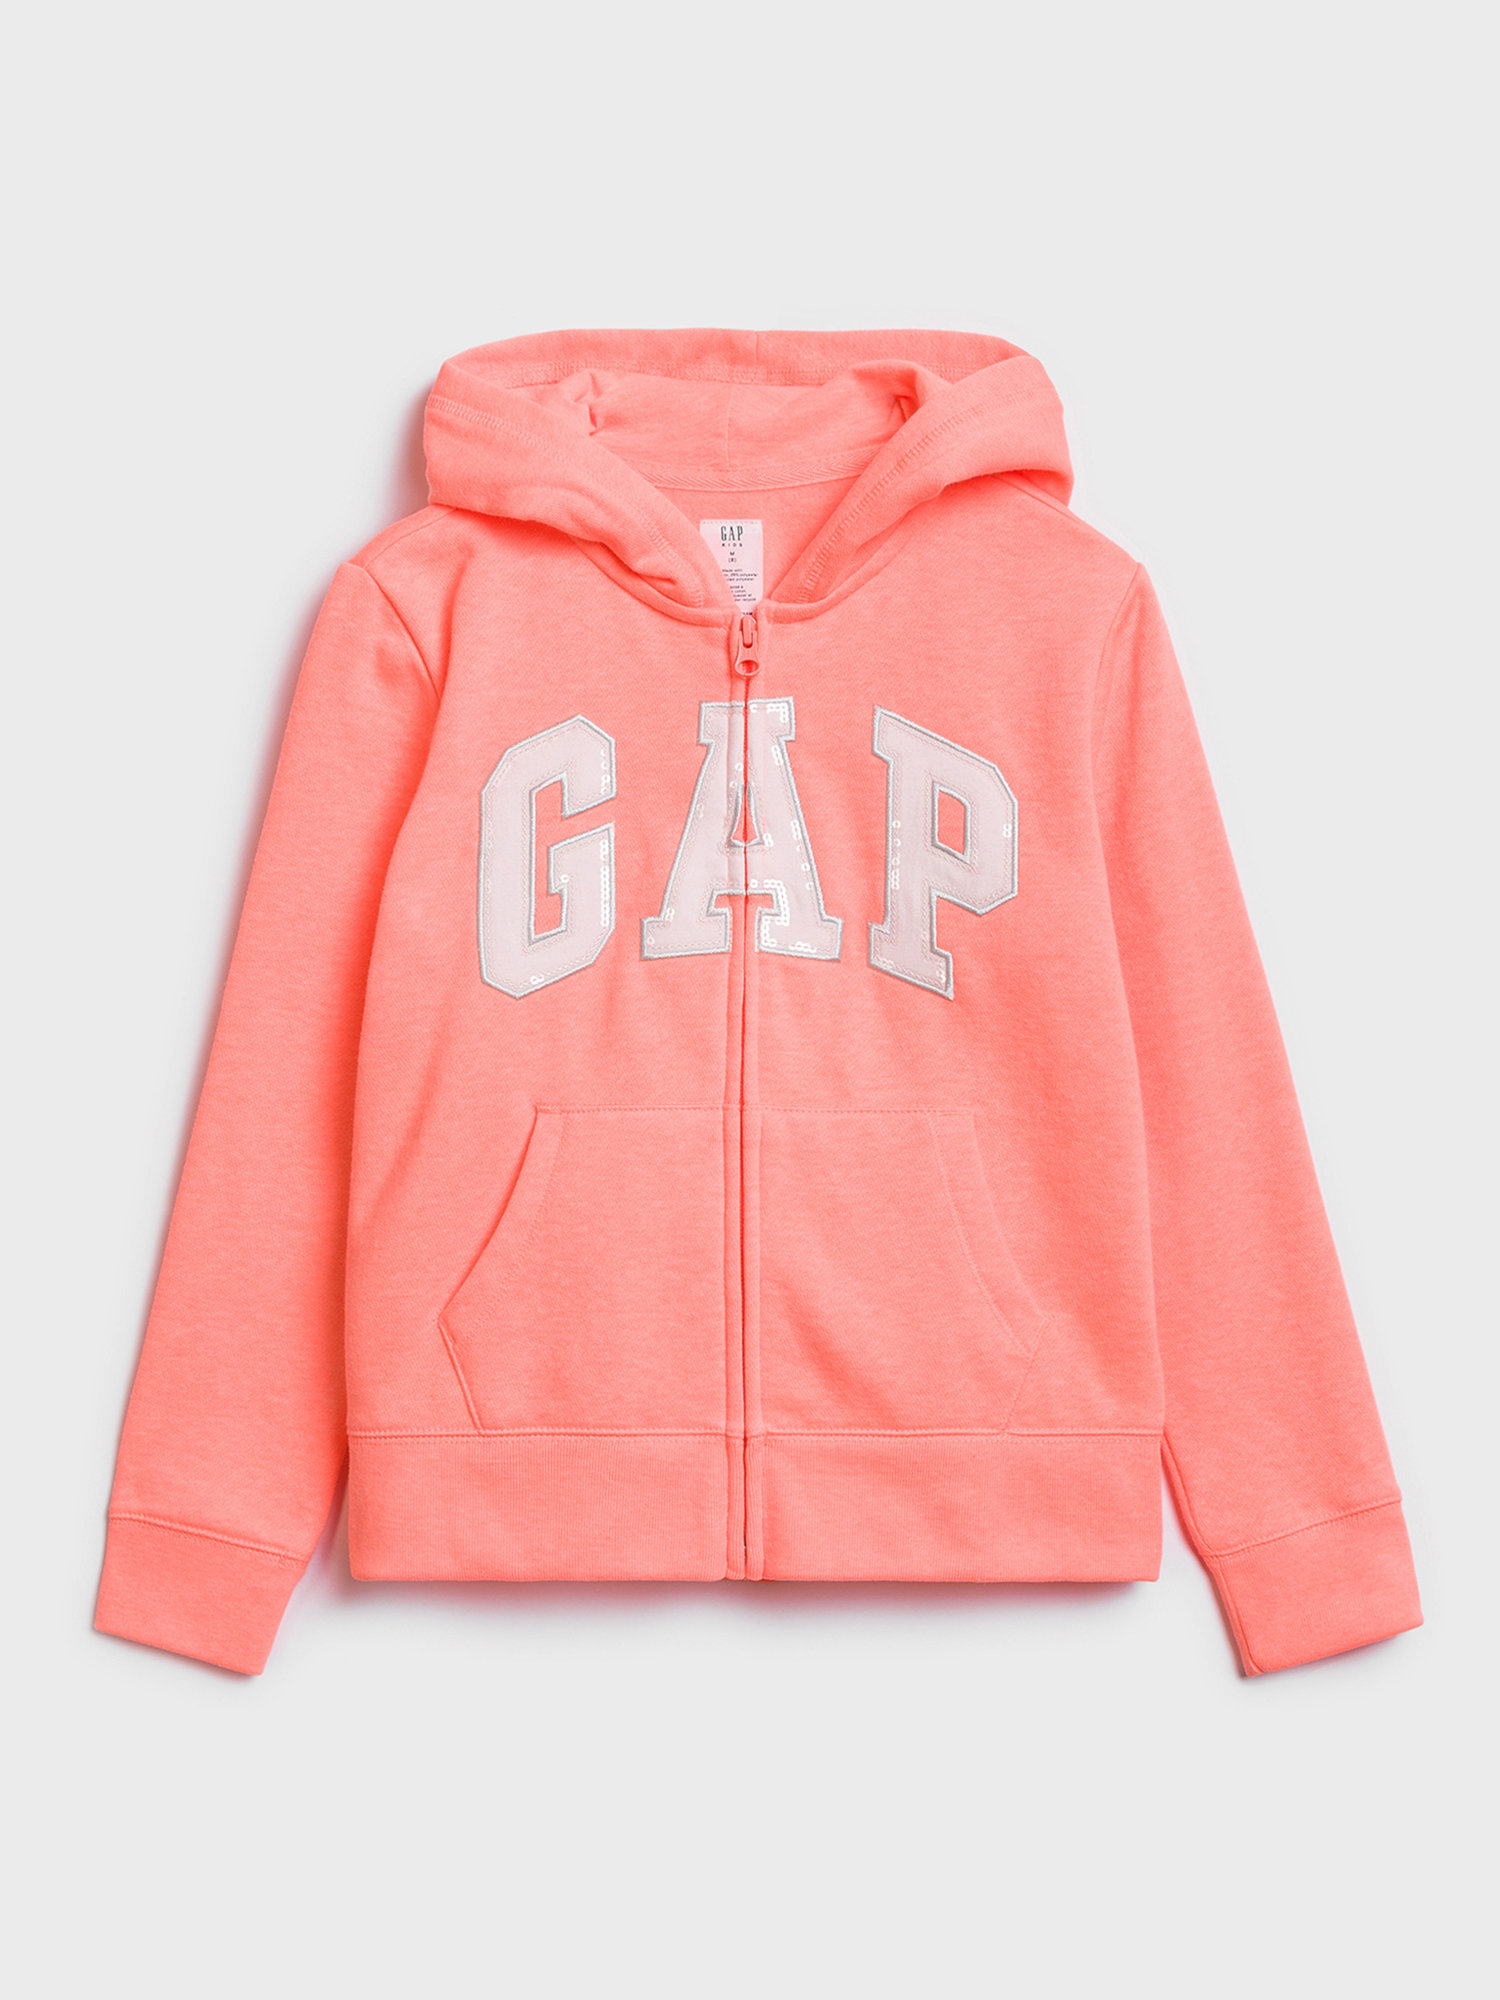 Růžová holčičí mikina GAP Logo